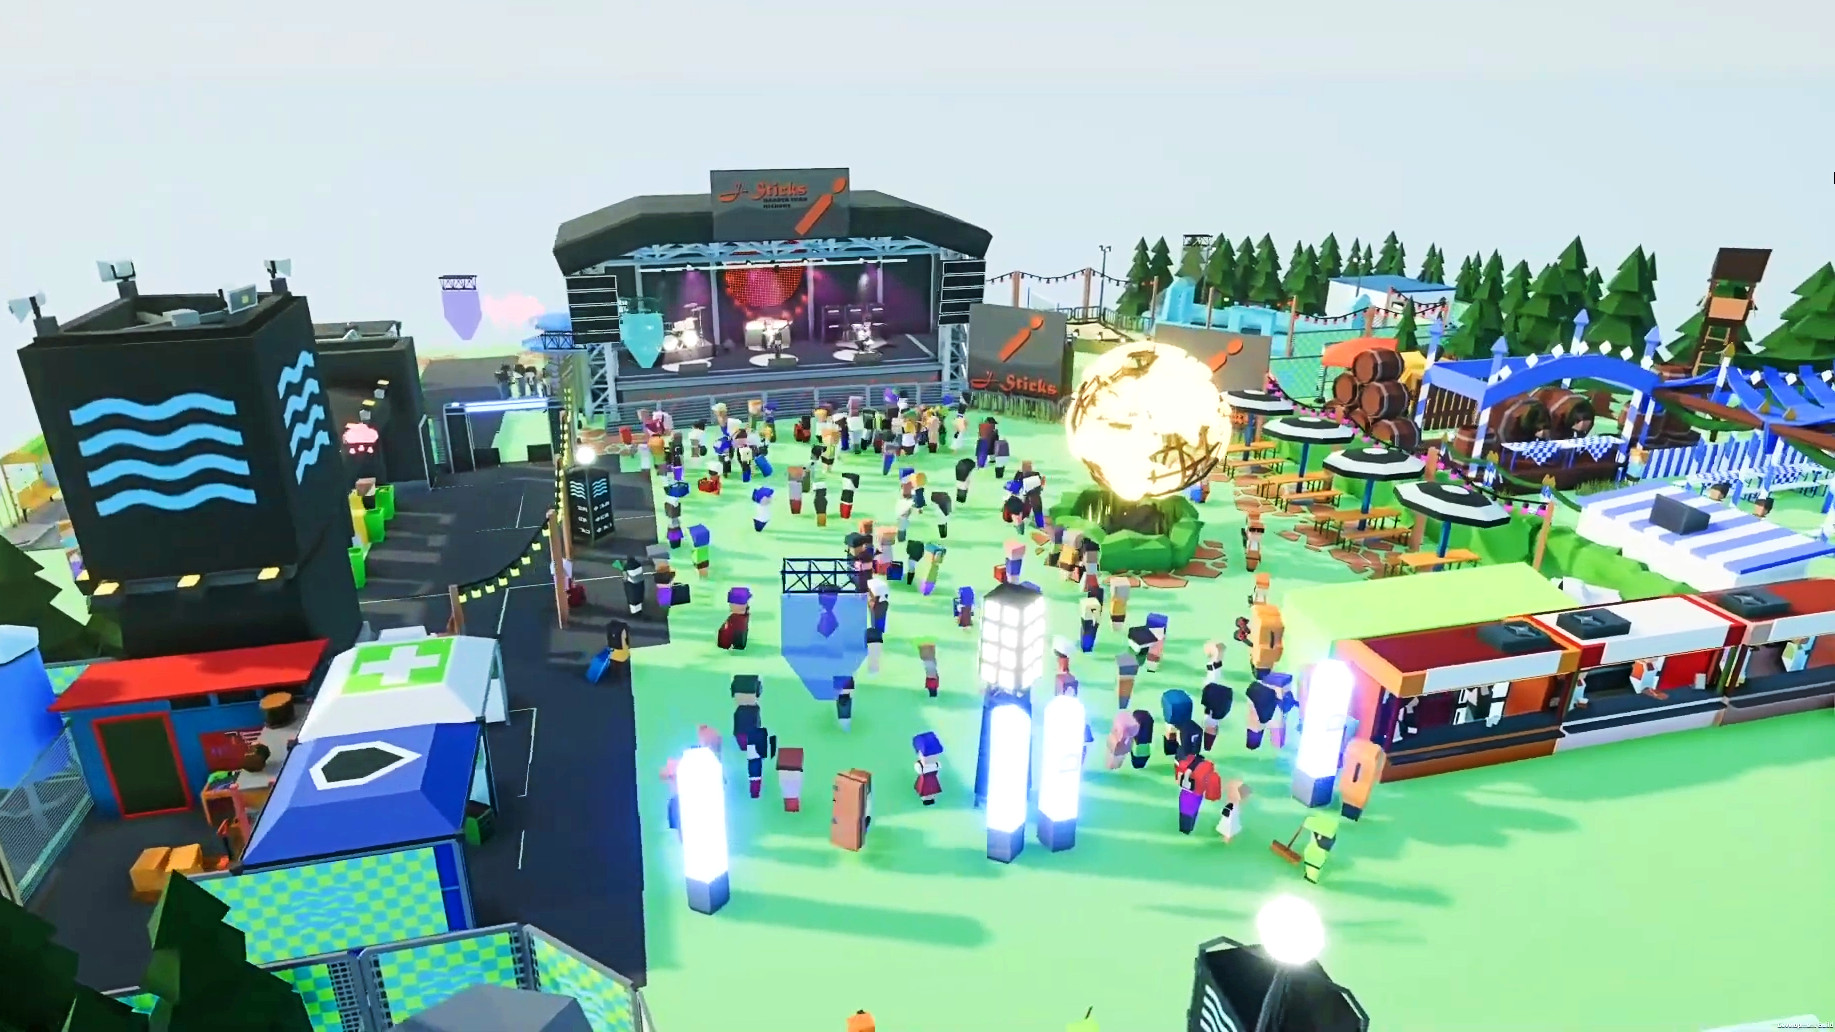 Festival Tycoon takes Planet Coaster to Glastonbury